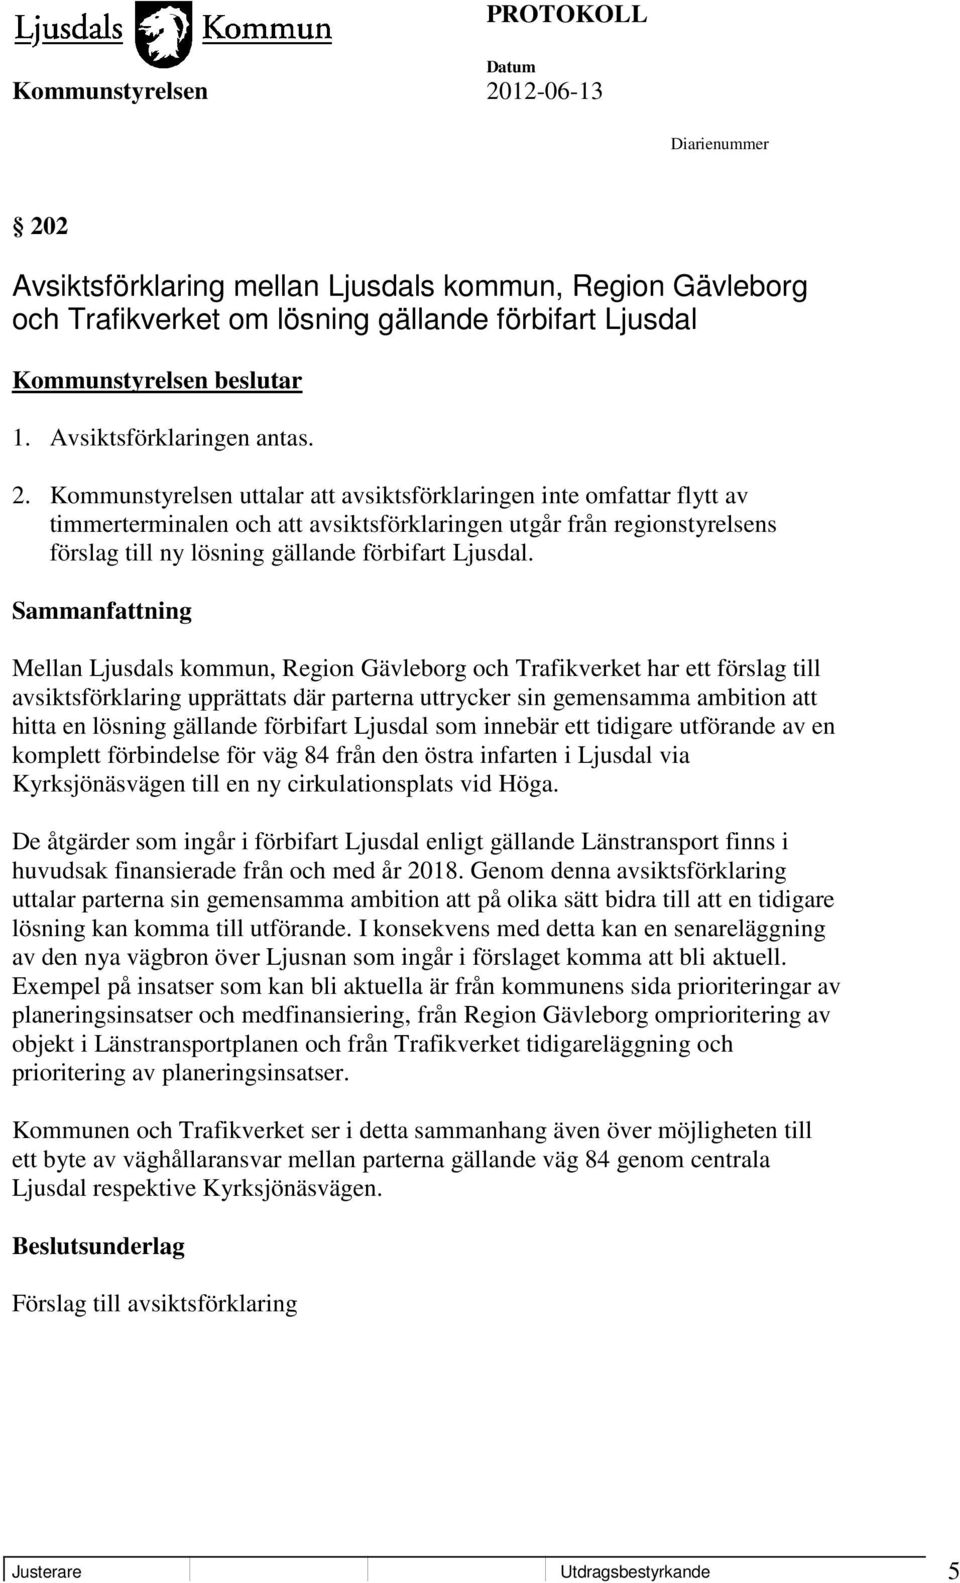 Mellan Ljusdals kommun, Region Gävleborg och Trafikverket har ett förslag till avsiktsförklaring upprättats där parterna uttrycker sin gemensamma ambition att hitta en lösning gällande förbifart